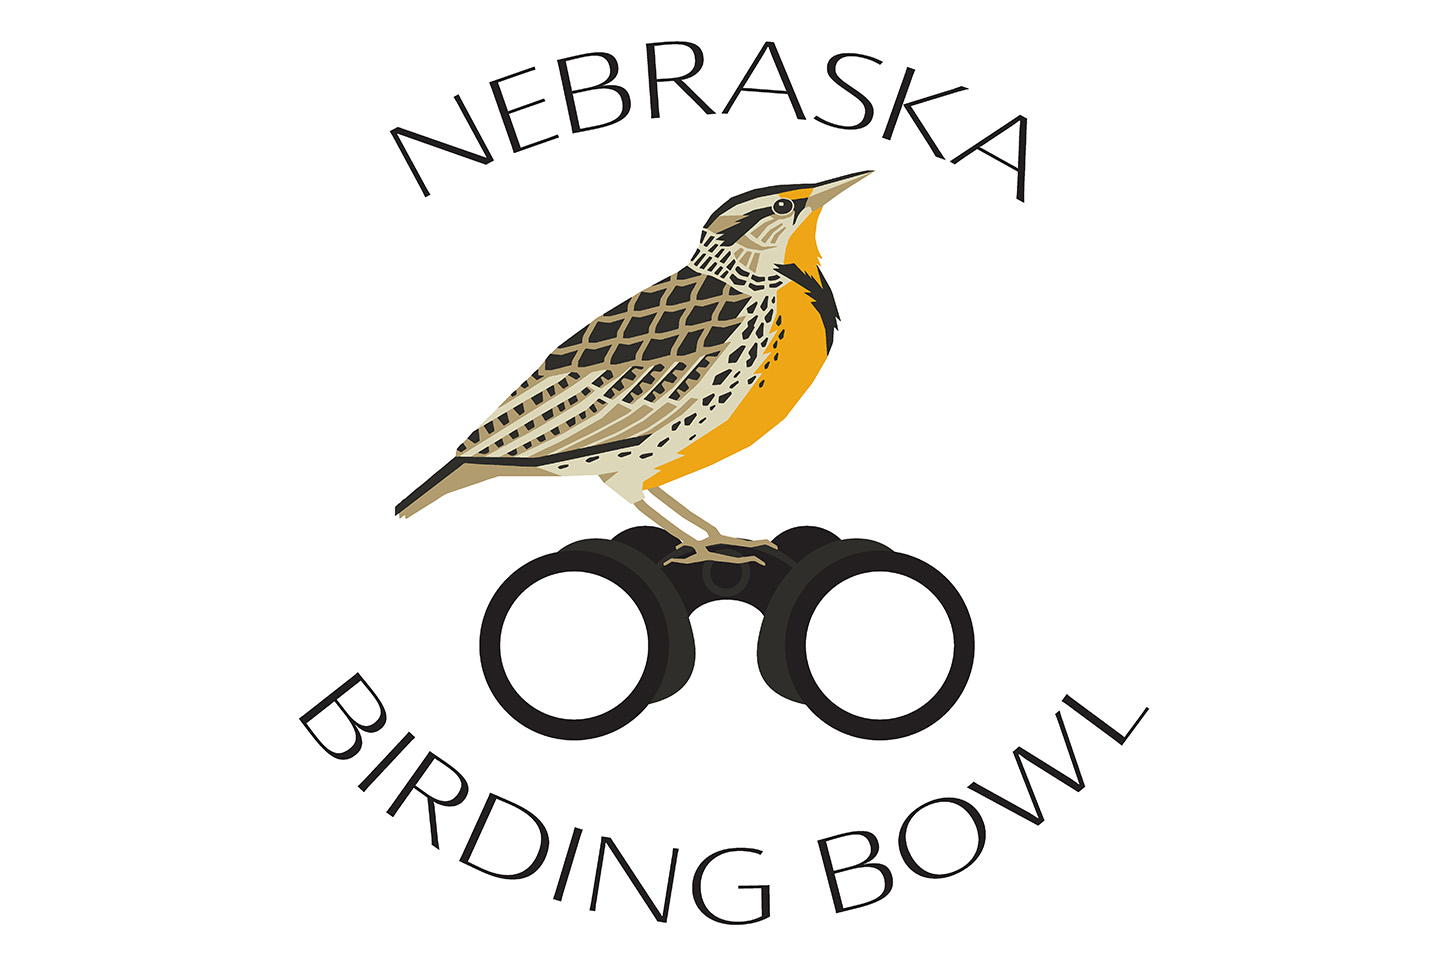 Read More: Nebraska Birding Bowl returns this May